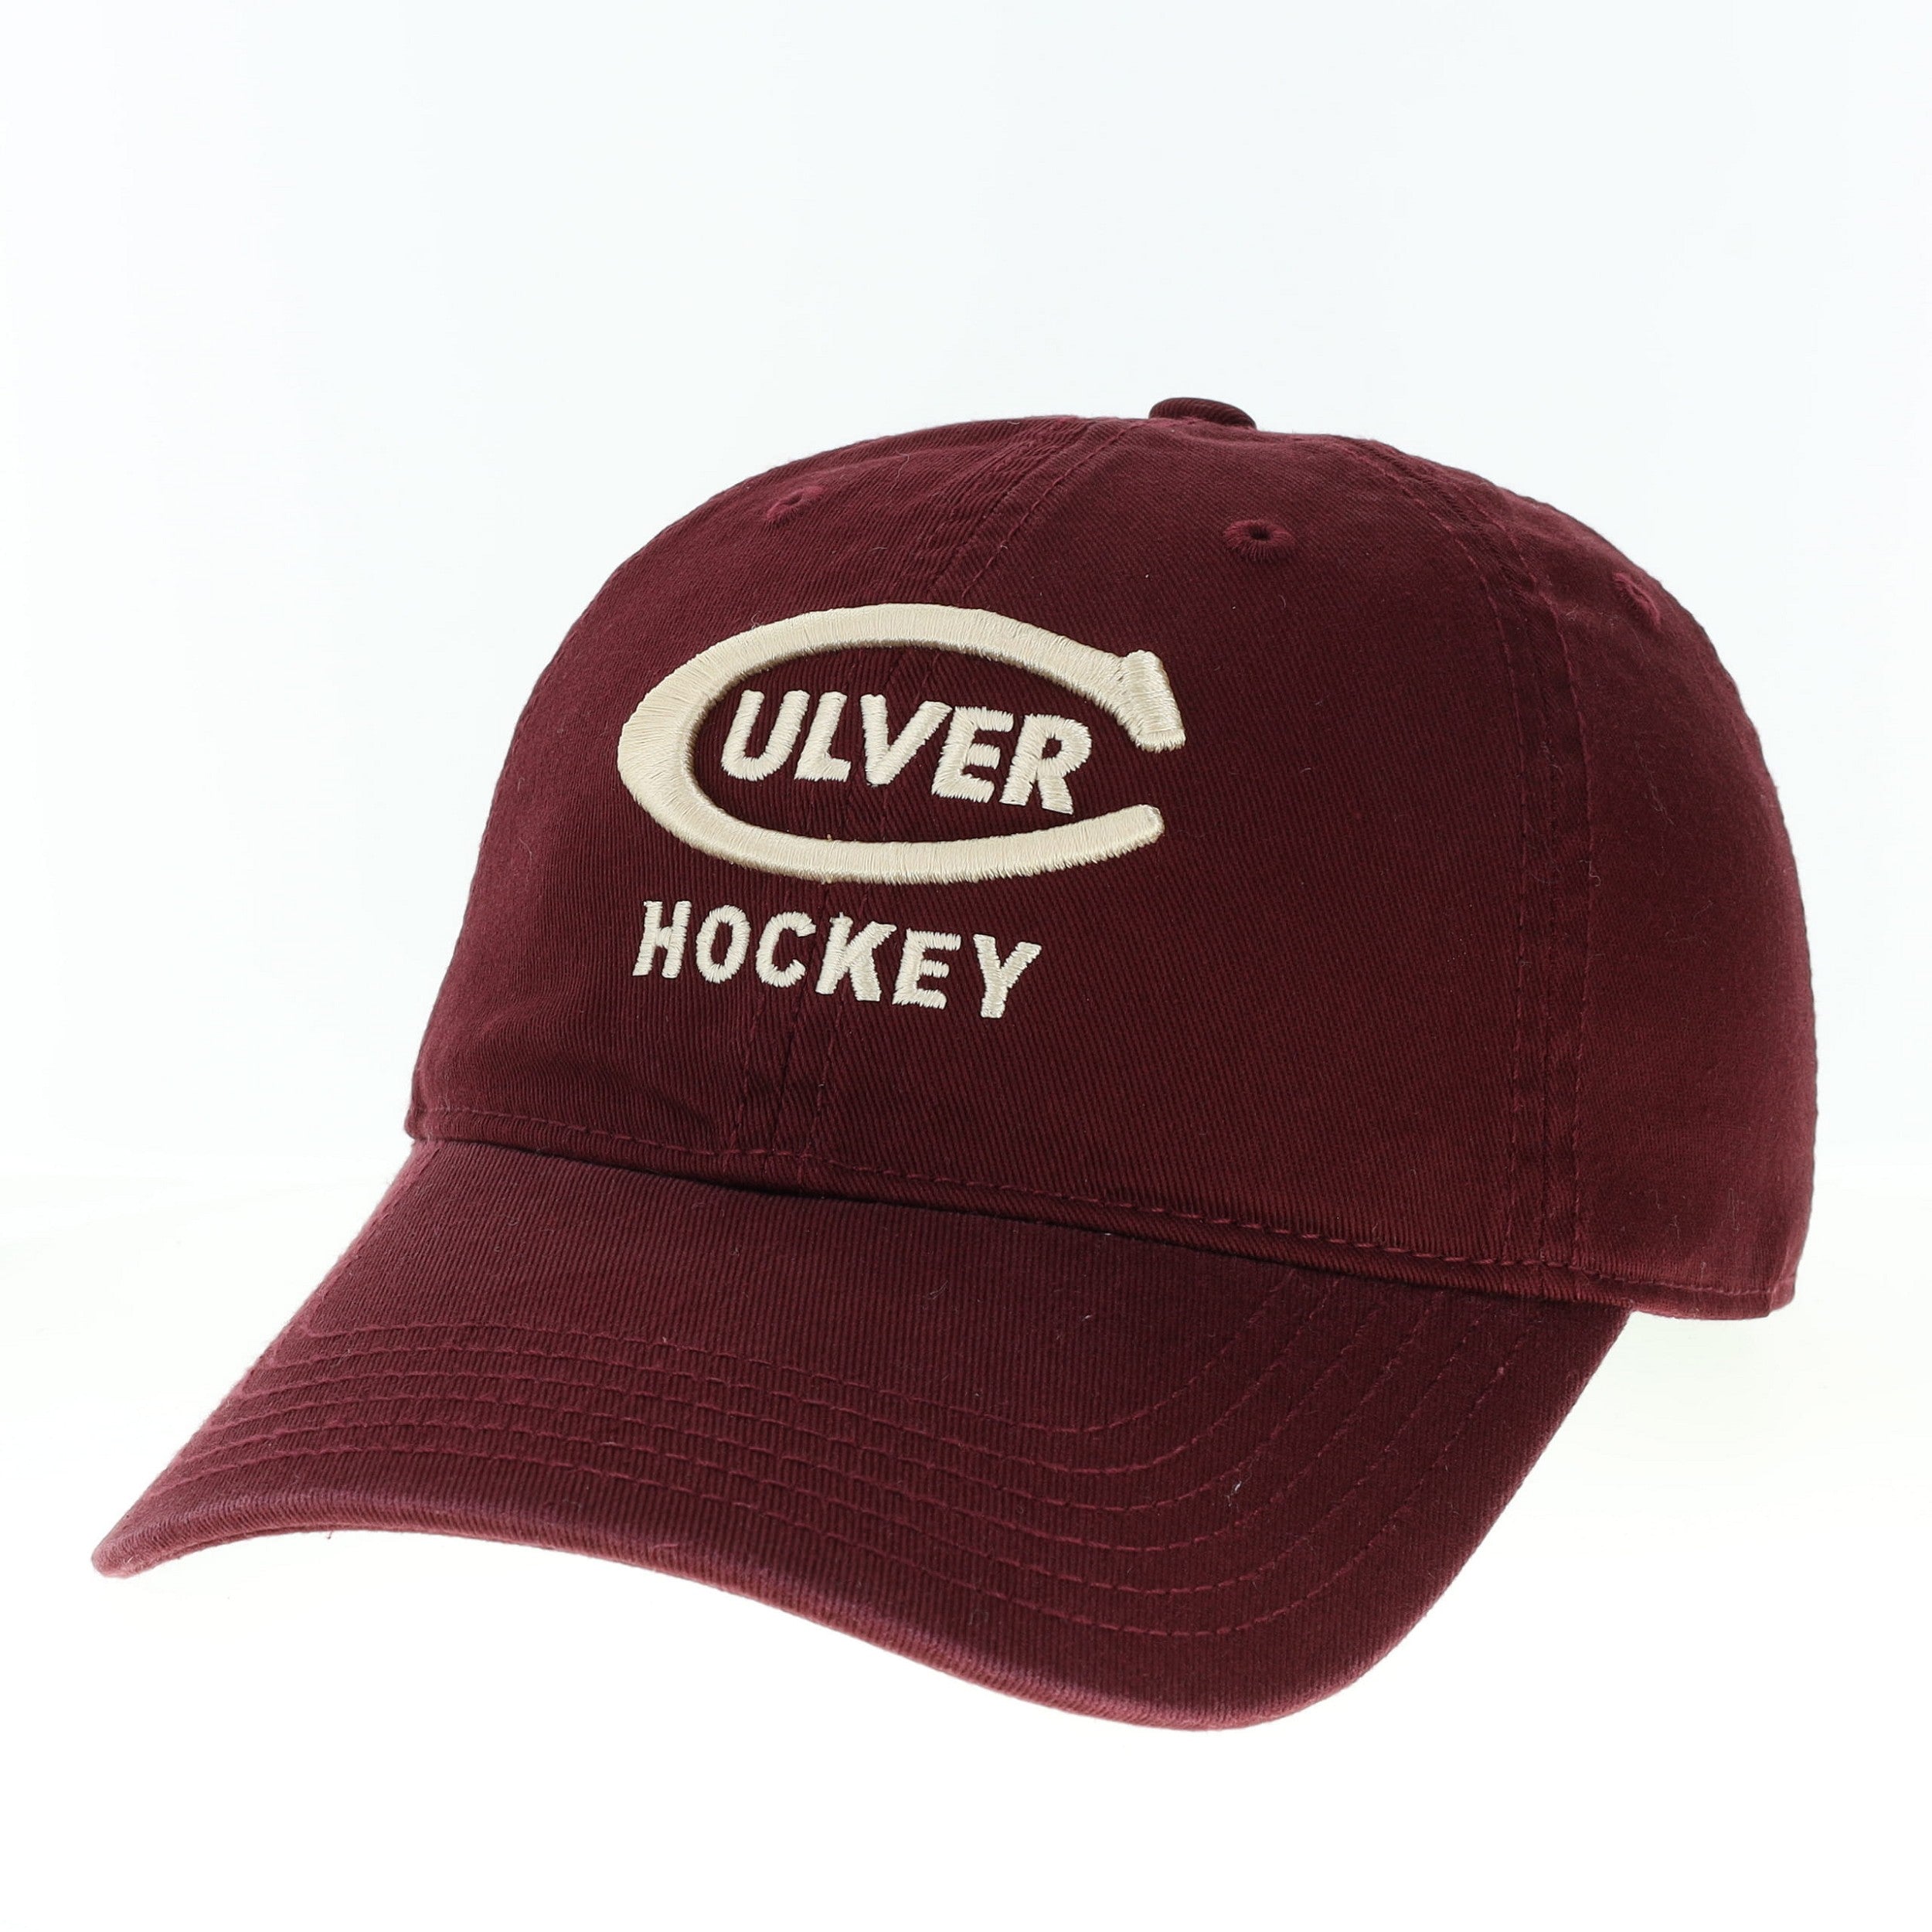 Culver Hockey Maroon Hat